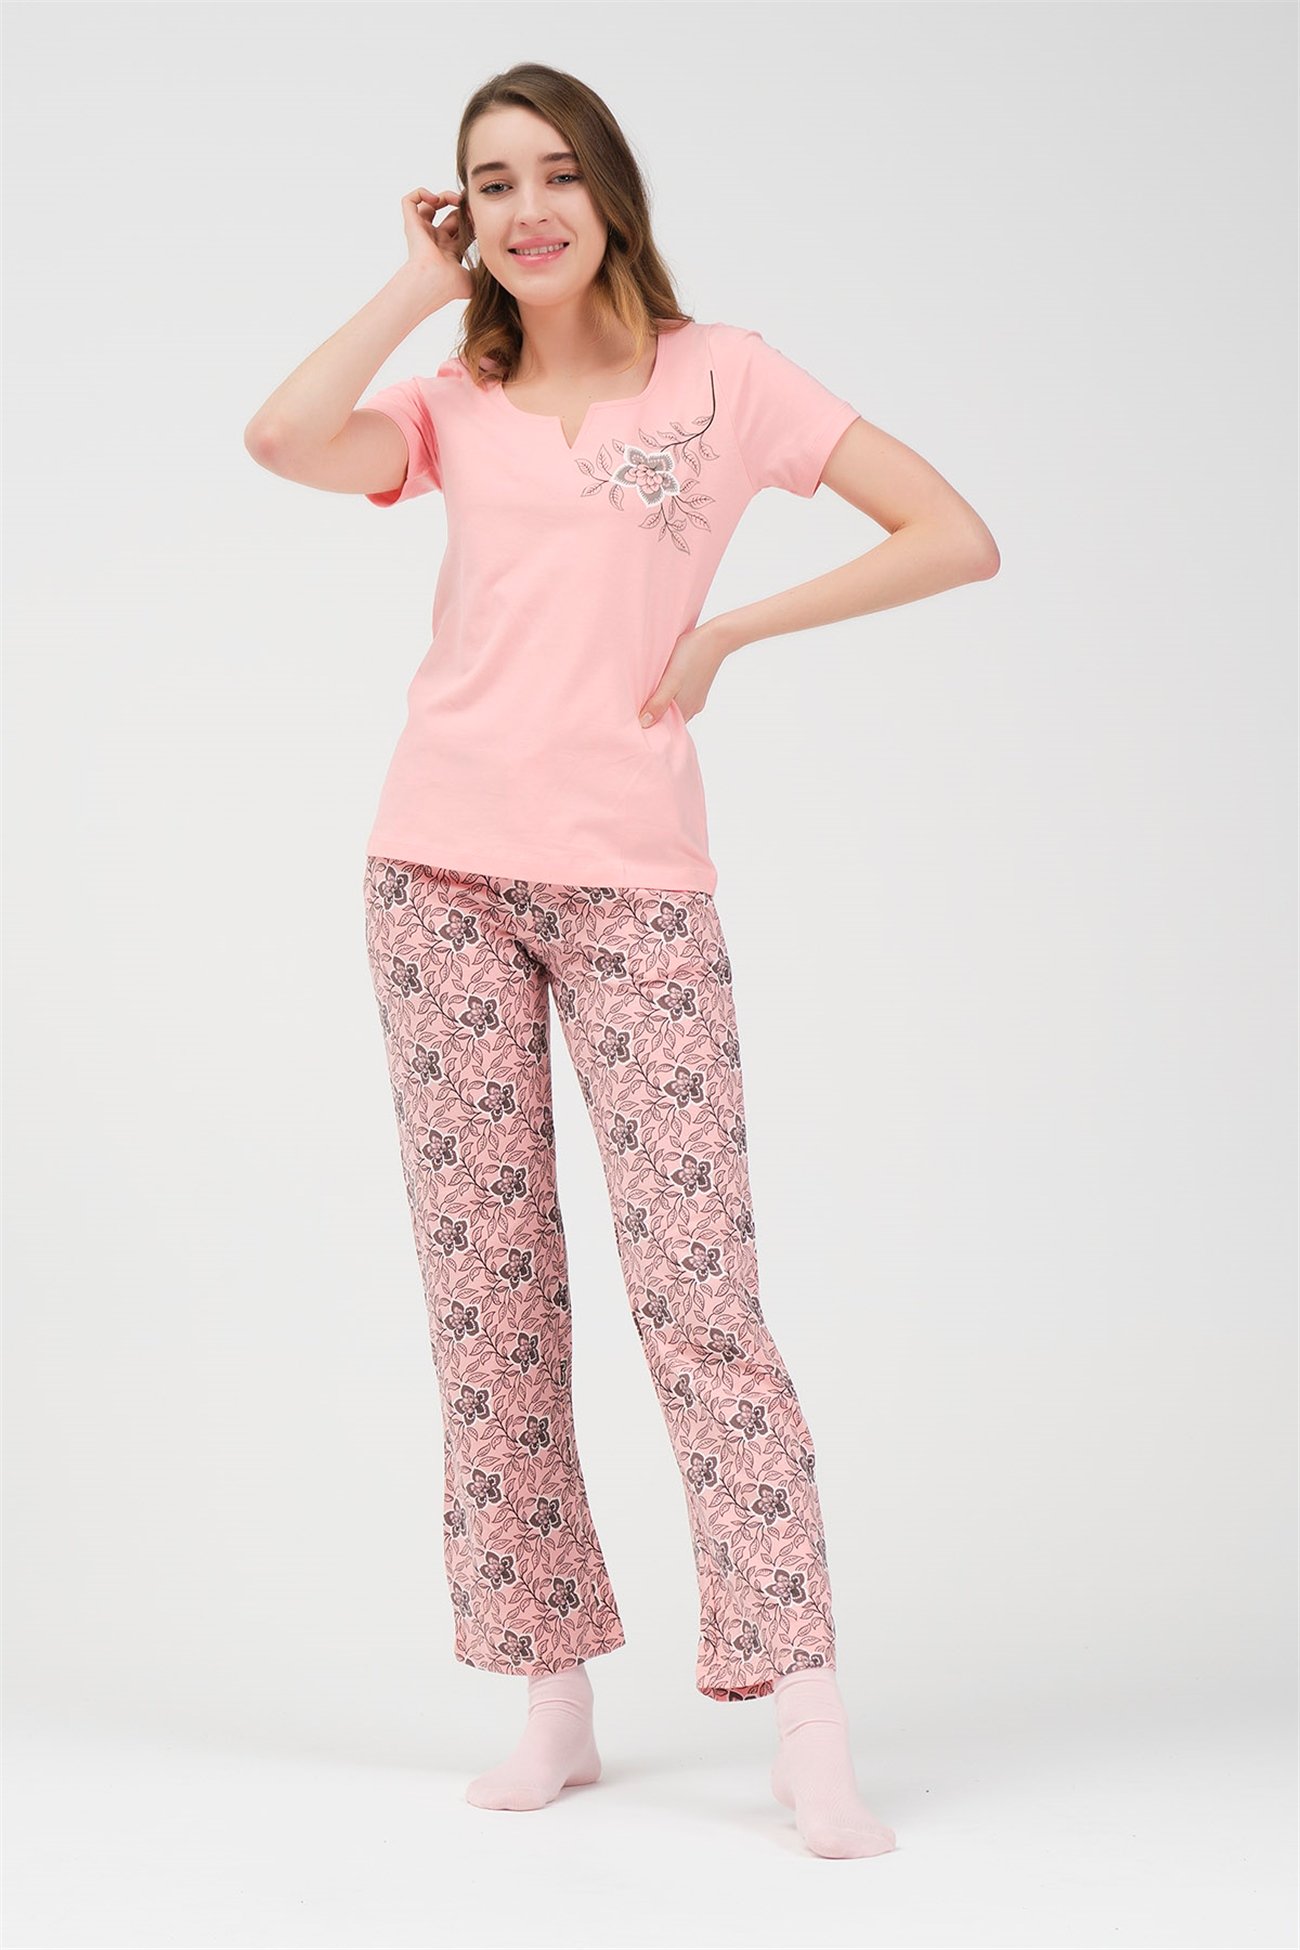 Baykar Kadın Çiçekli Pijama Takımı 9464 Pembe - Baykar